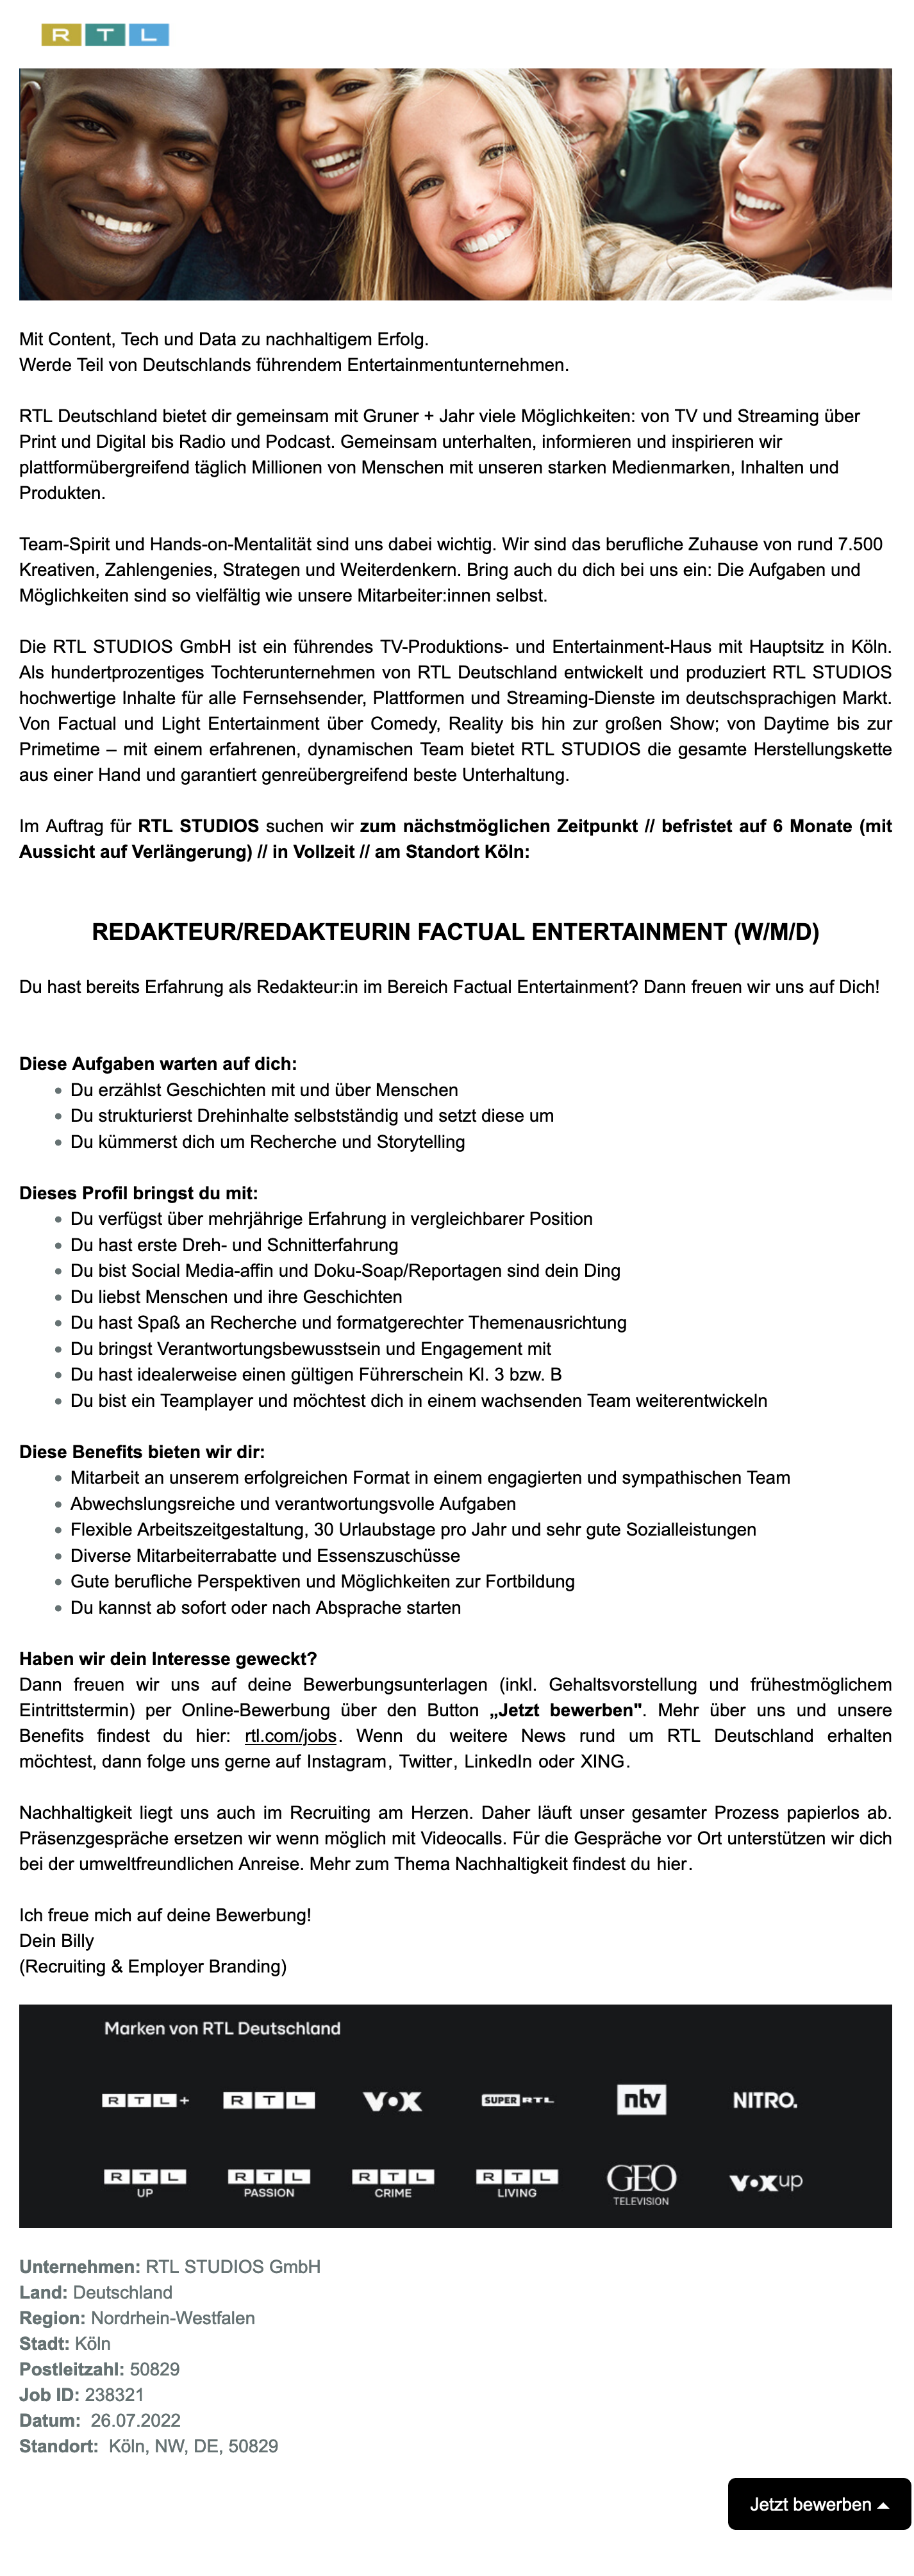 Redakteur Factual Entertainment (w/m/d) (RTL STUDIOS)